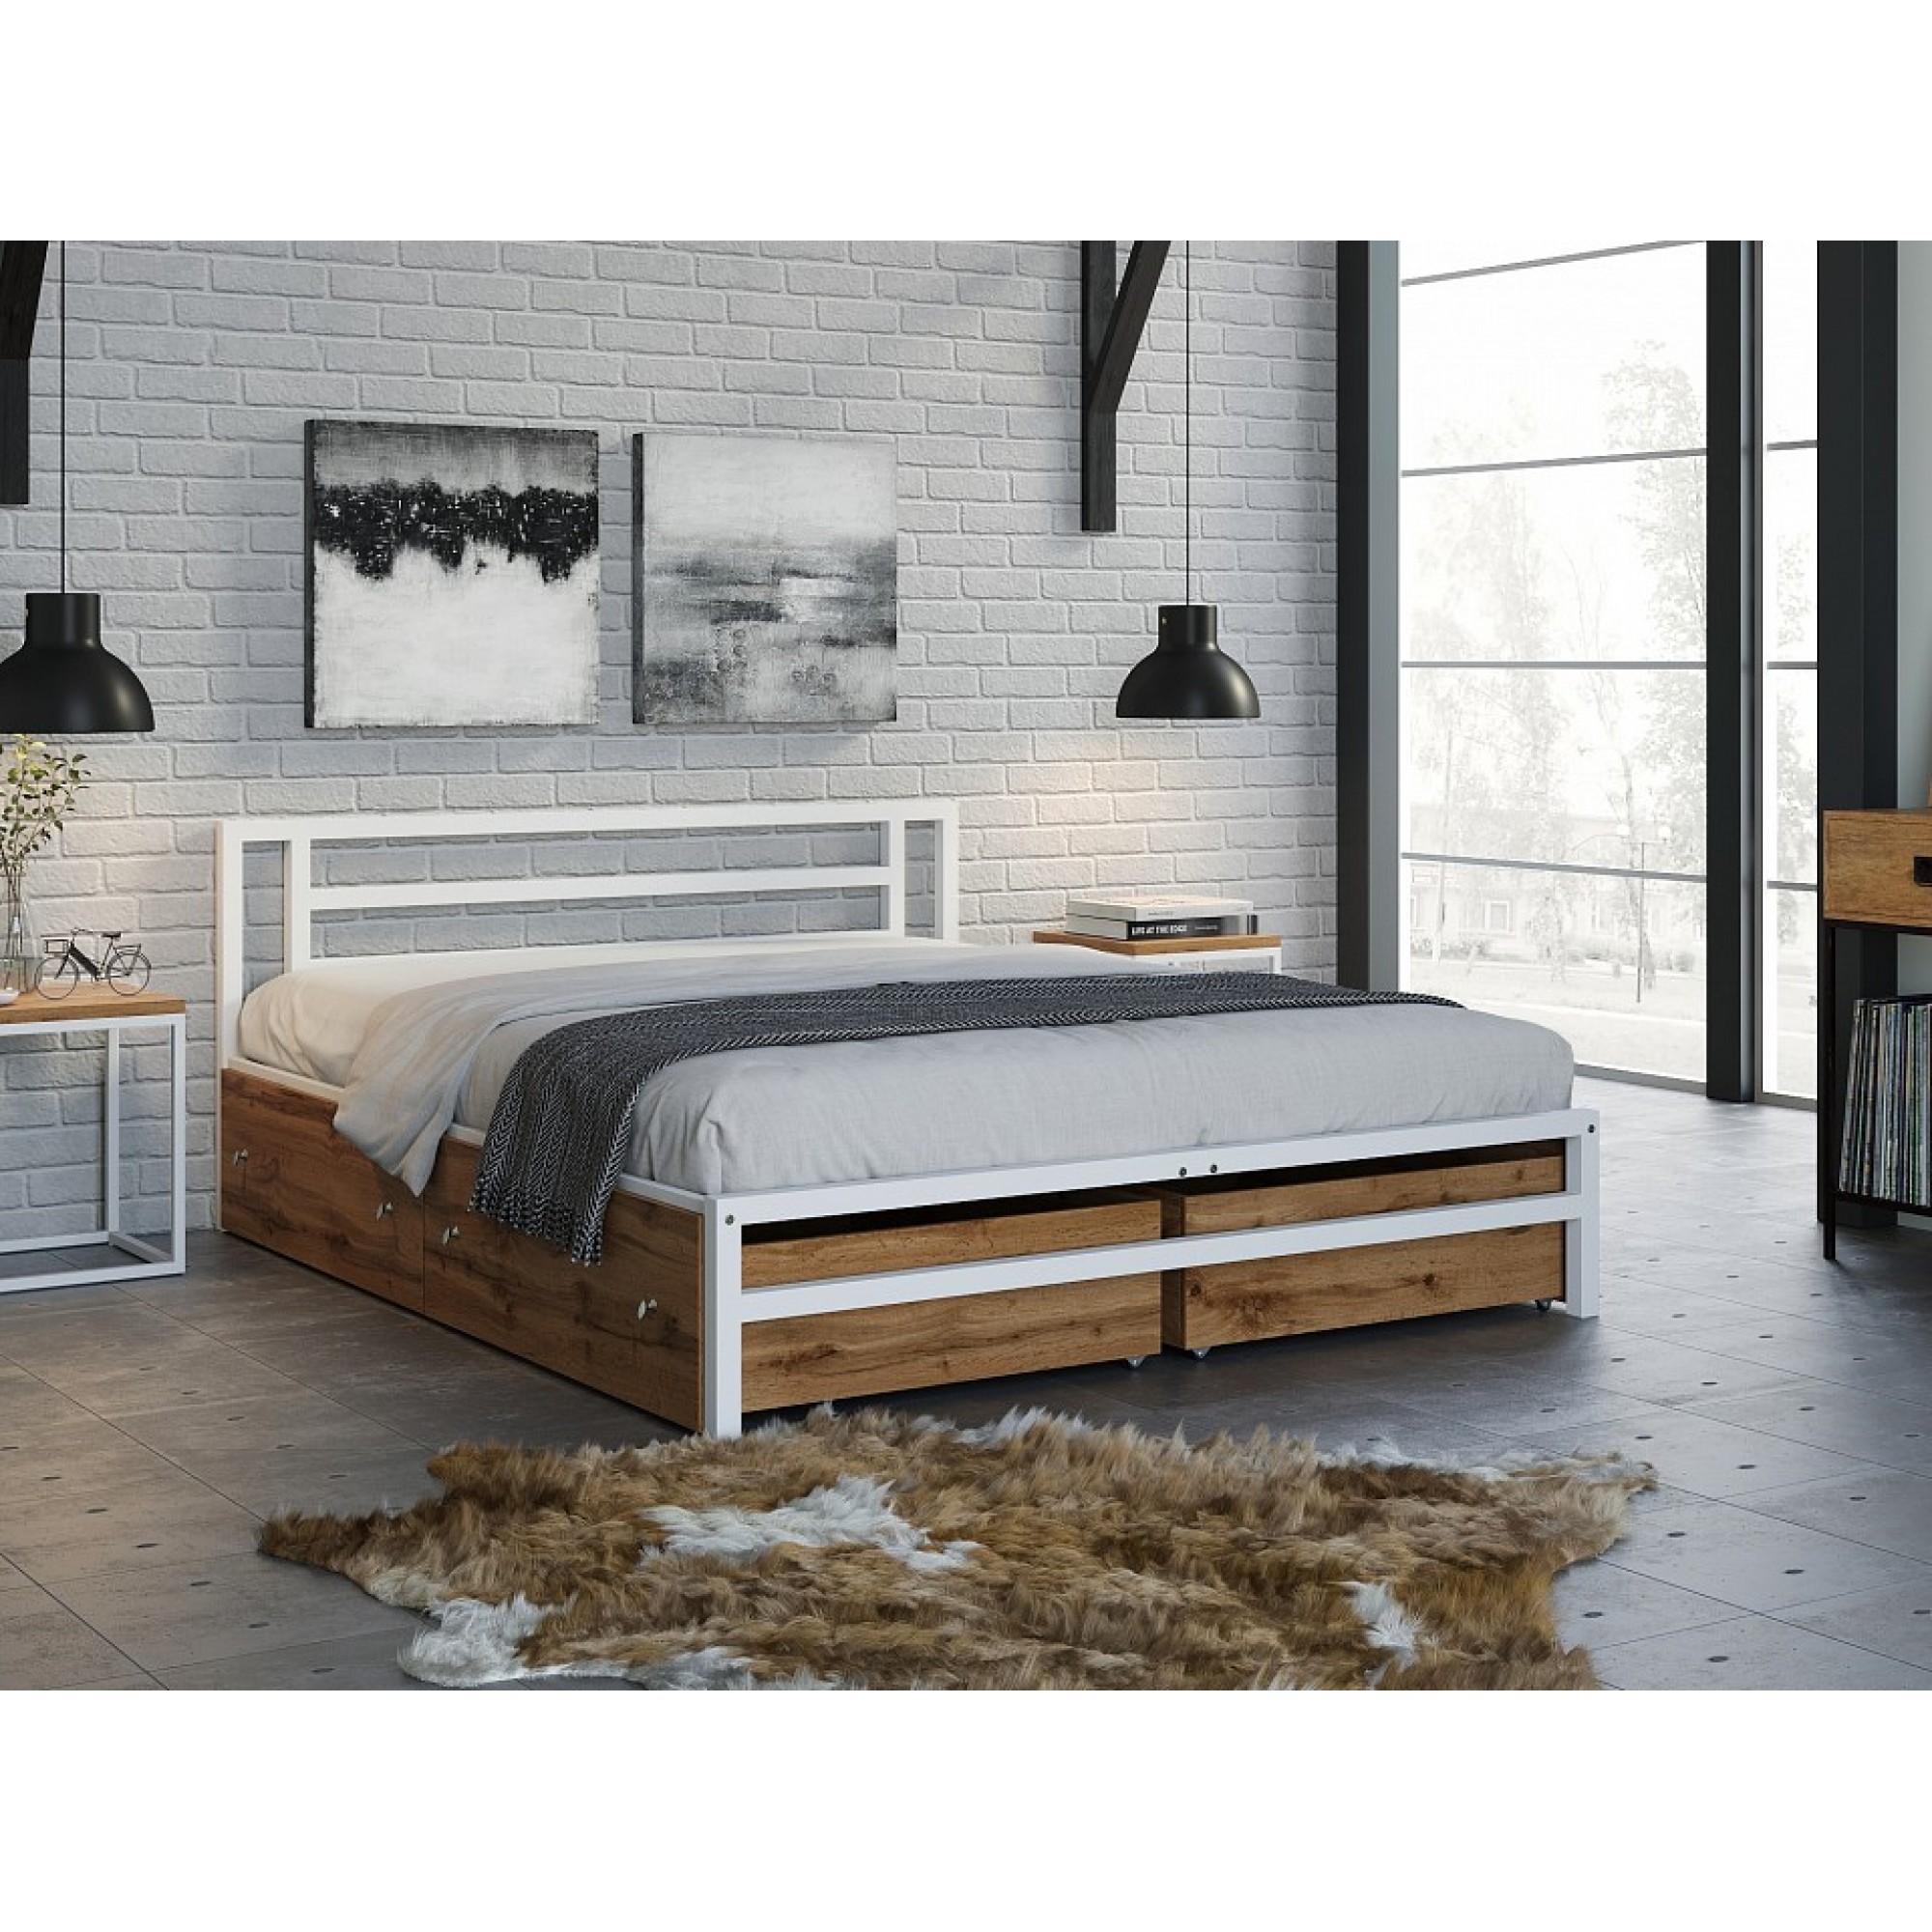 Кровать двуспальная Титан    FSN_4S-TI-4y-vat-9003